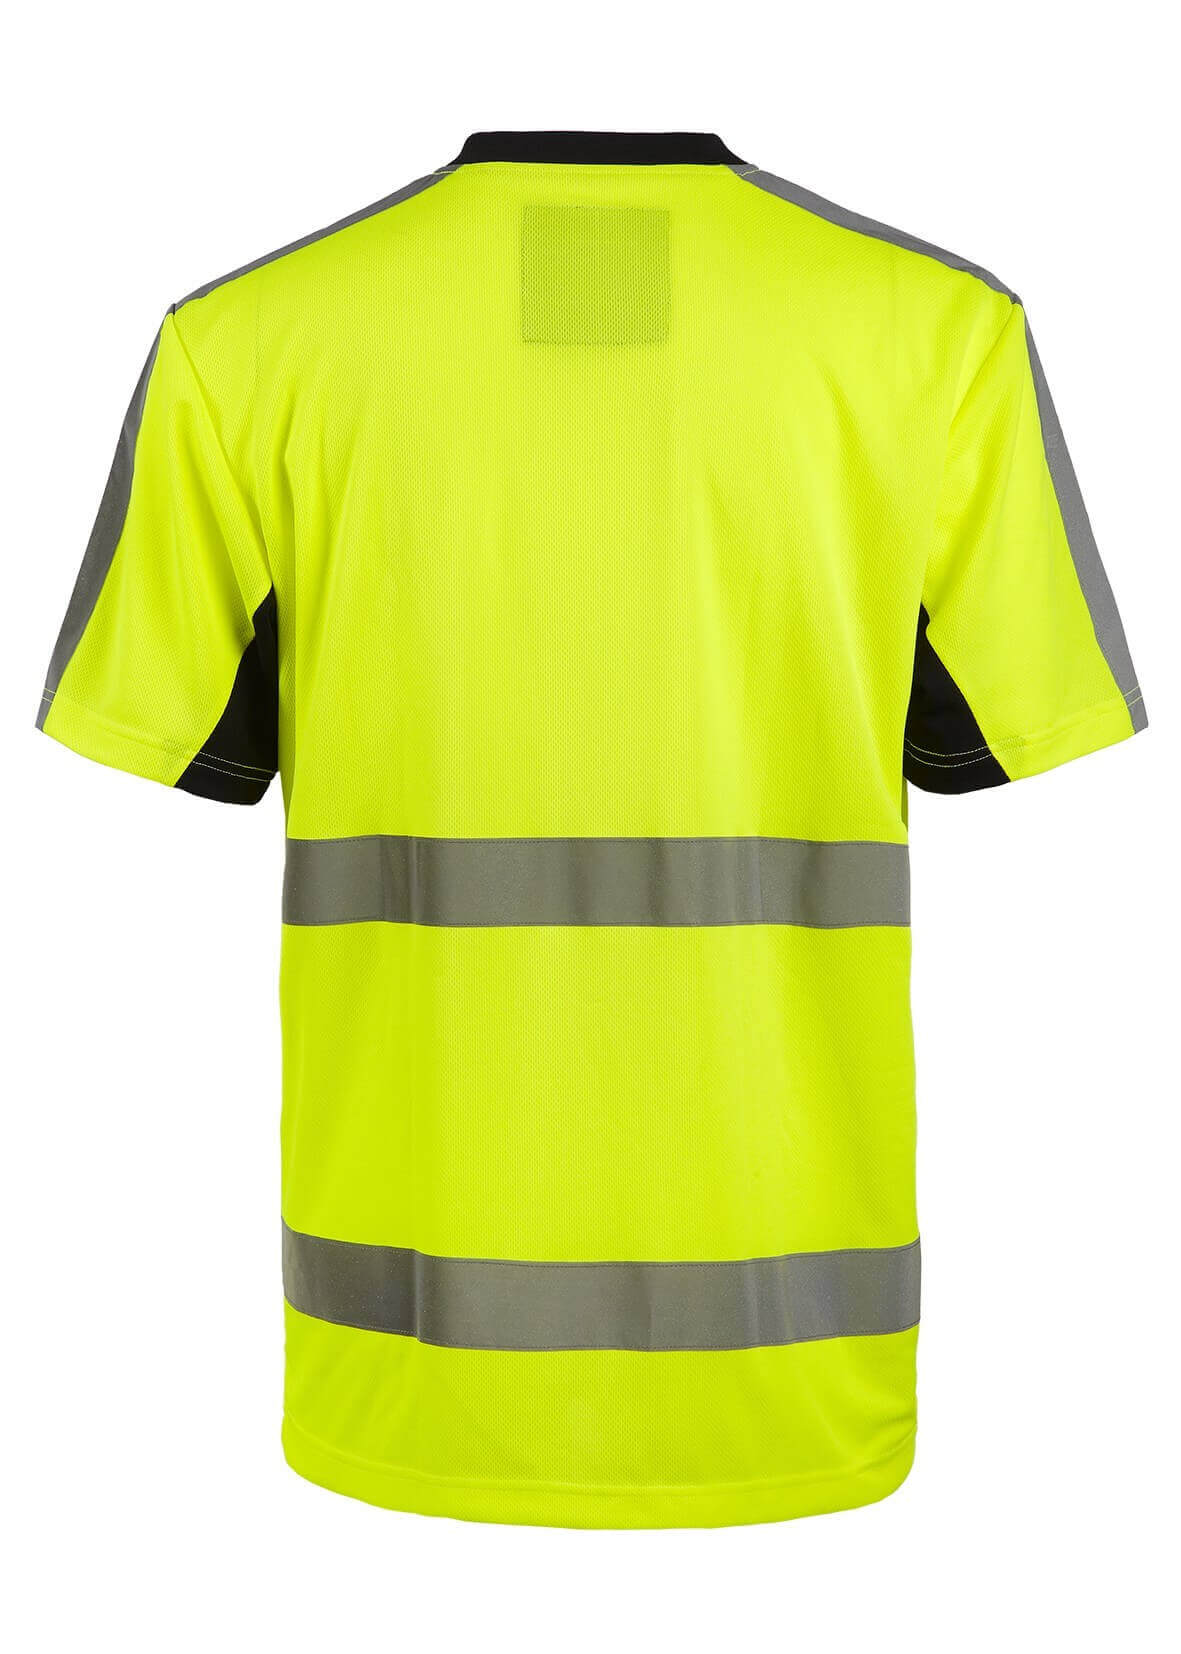 Tee shirt haute visibilite jaune ou orange Armstrong North Ways cotepro jaune